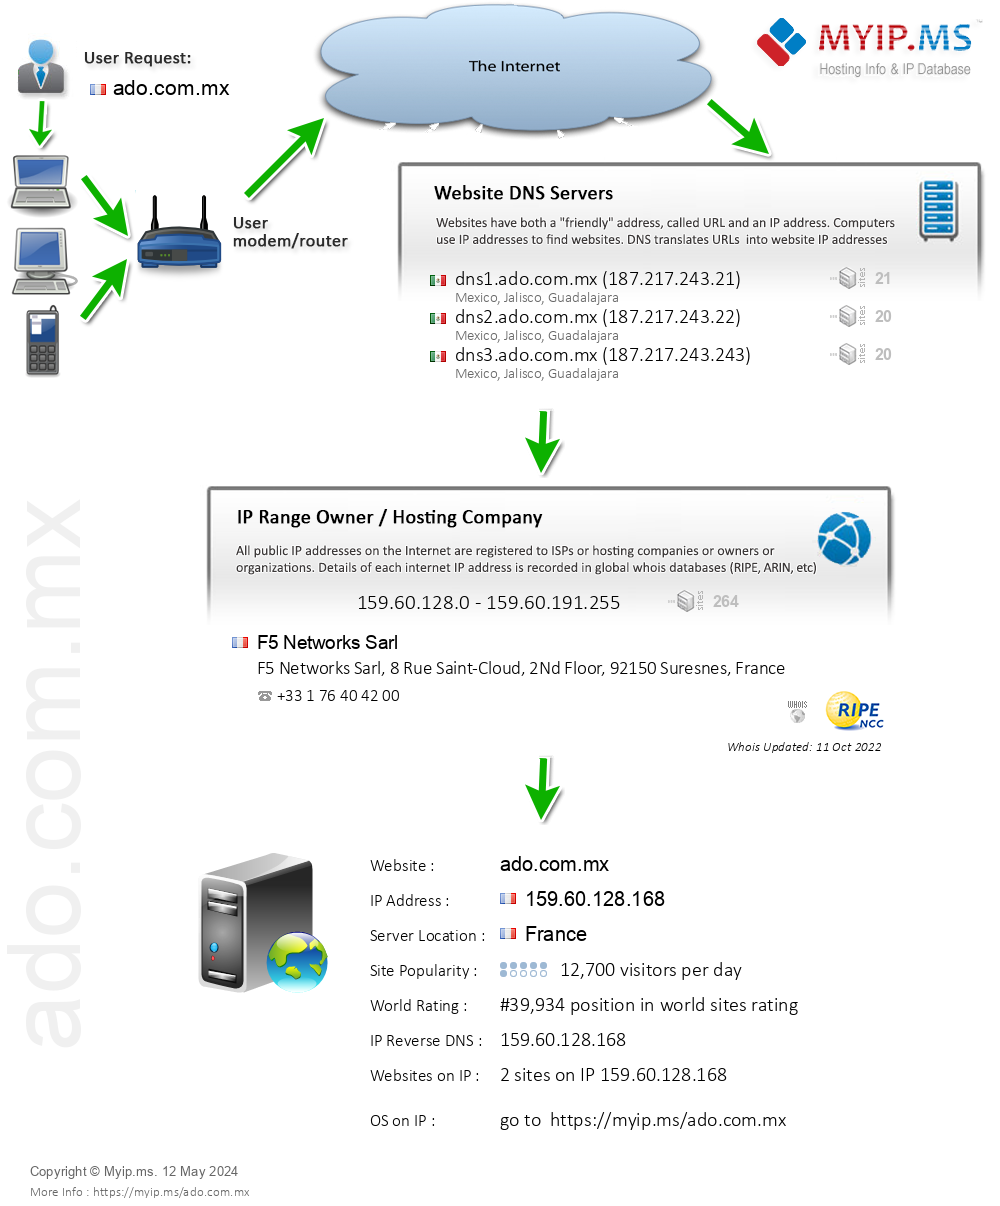 Ado.com.mx - Website Hosting Visual IP Diagram